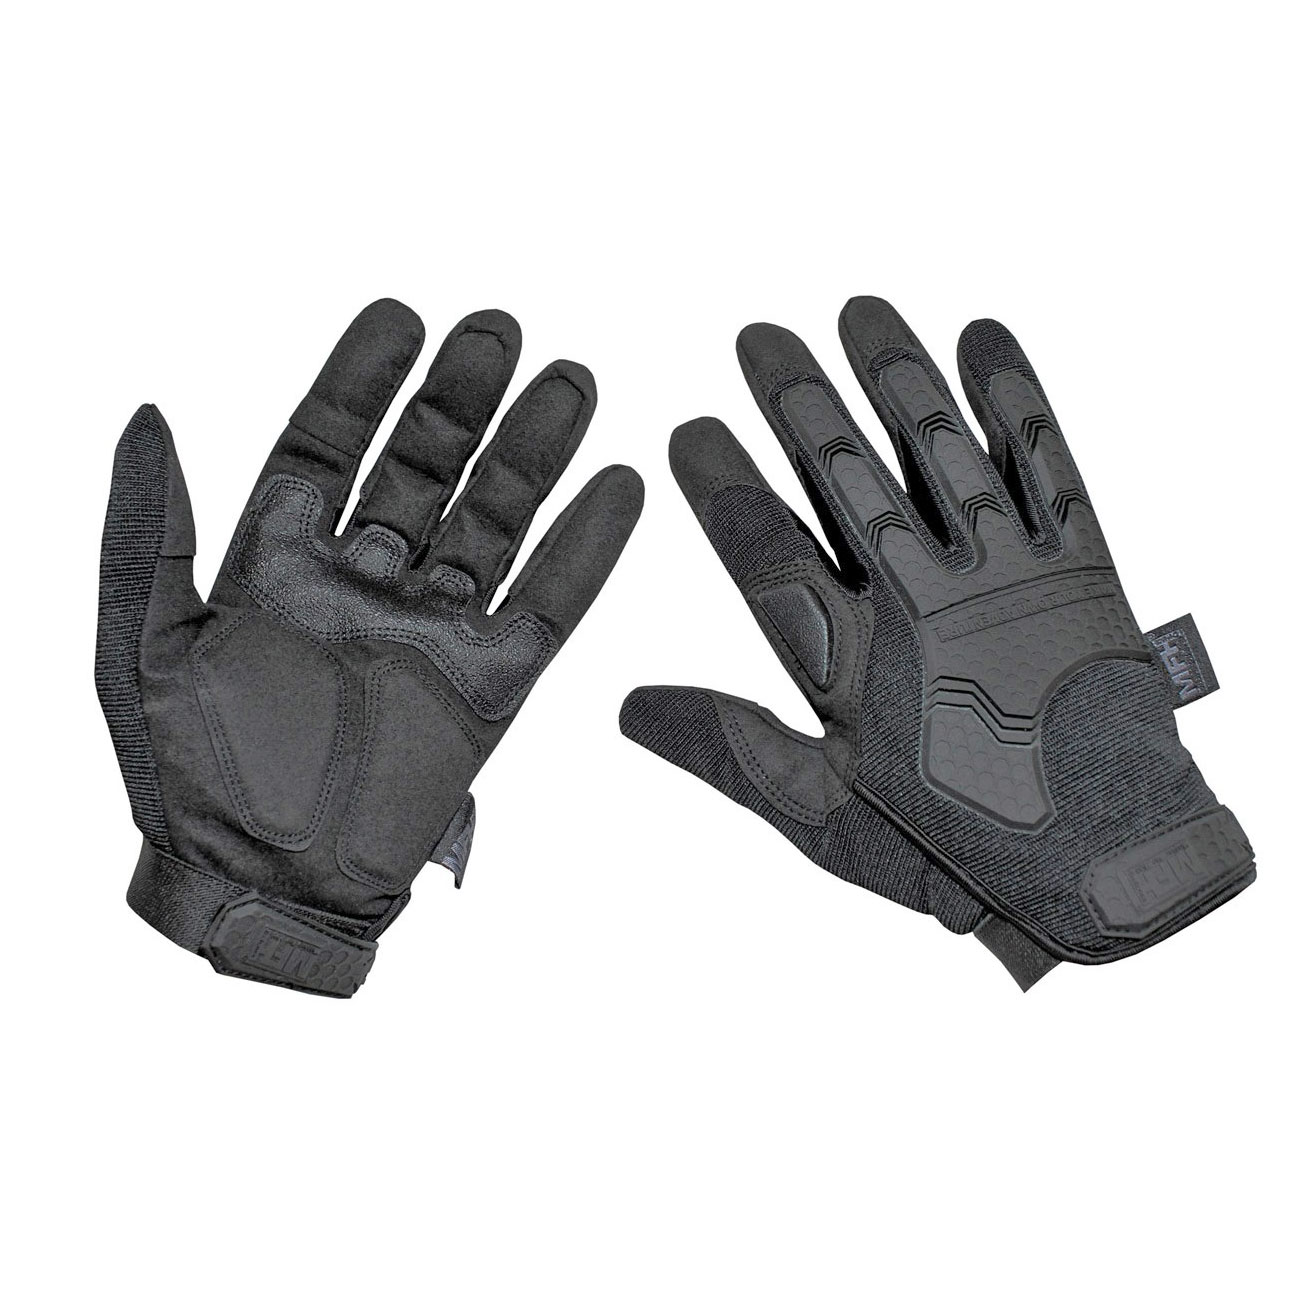 MFH Tactical Handschuhe PROTECT fingerless Einsatzhandschuhe Security 